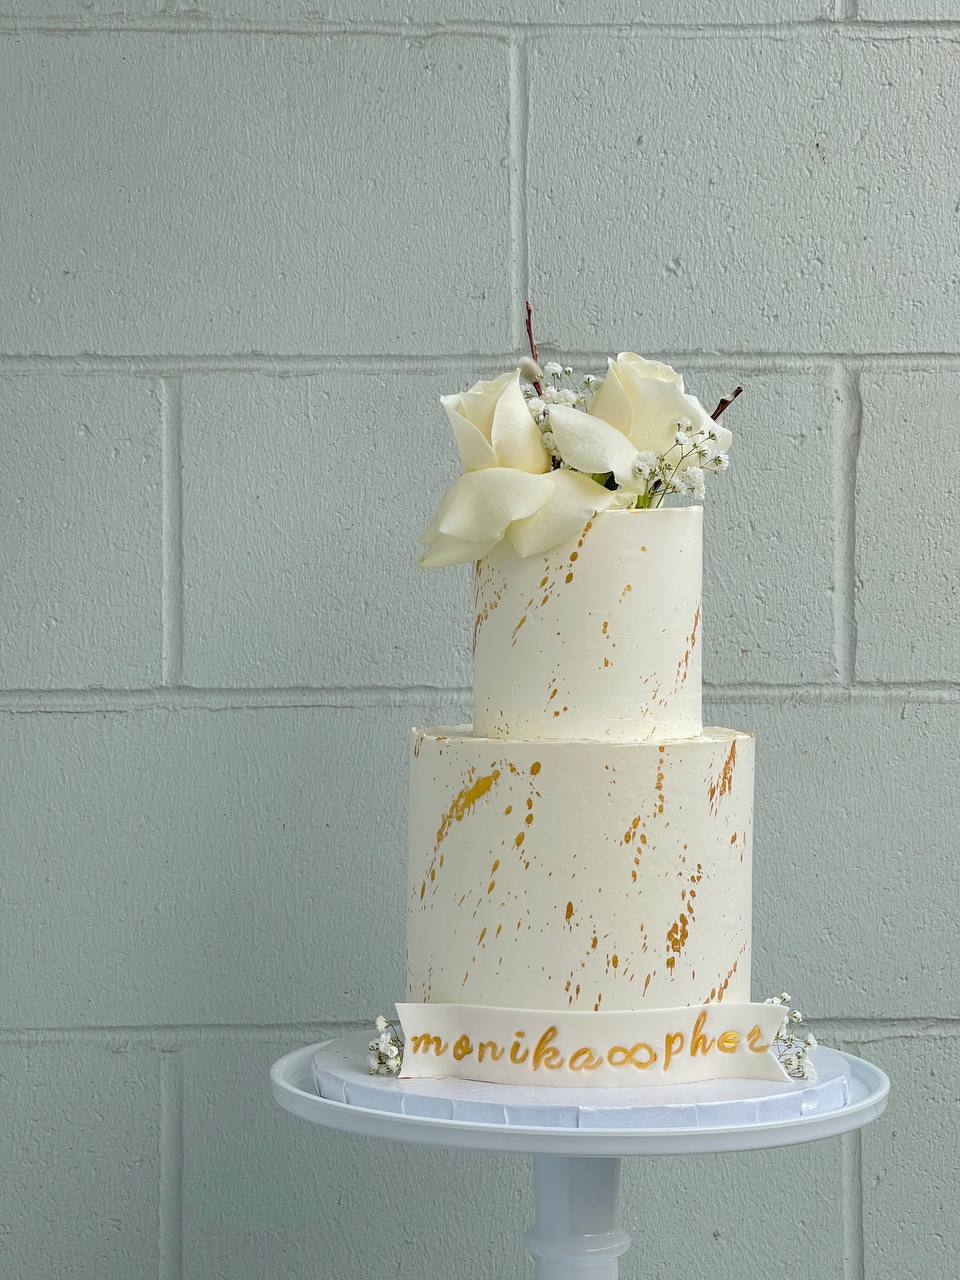 Classy anniversary cake